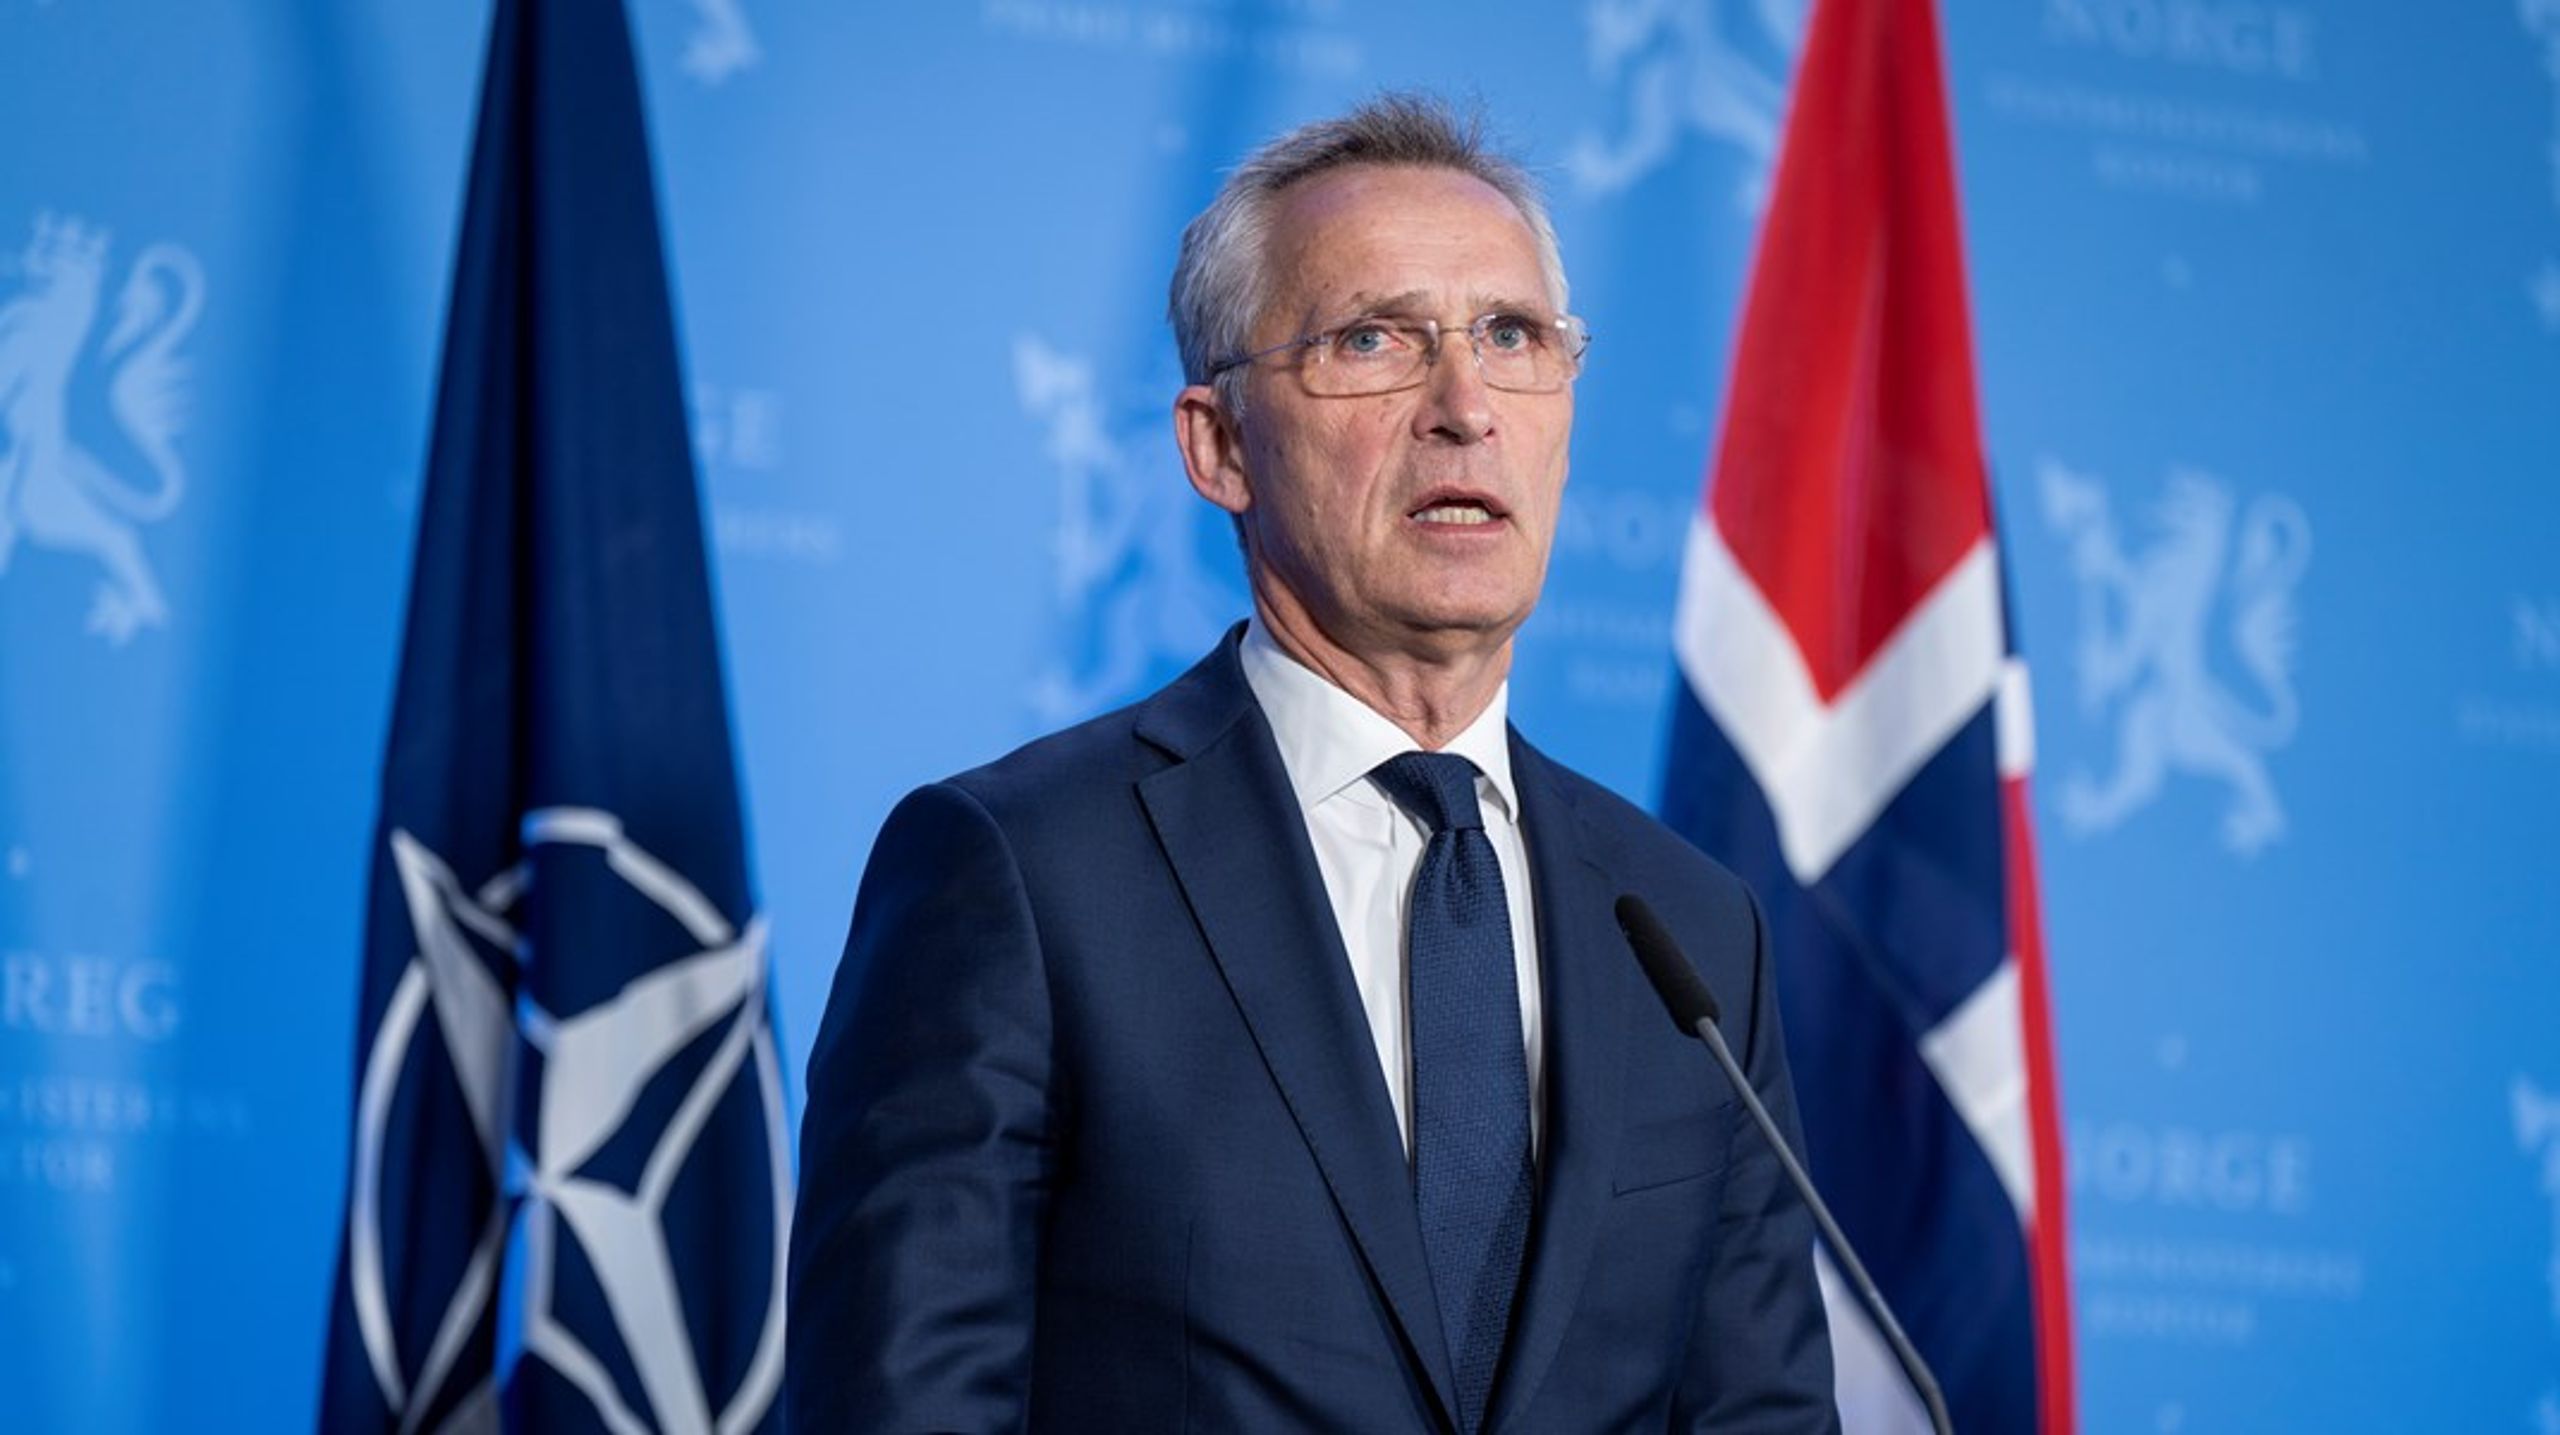 Norges tidligere statsminister Jens Stoltenberg fortsetter som generalsekretær i Nato frem til 1. oktober 2024. Det bekreftet forsvarsalliansen i en pressemelding tirsdag.